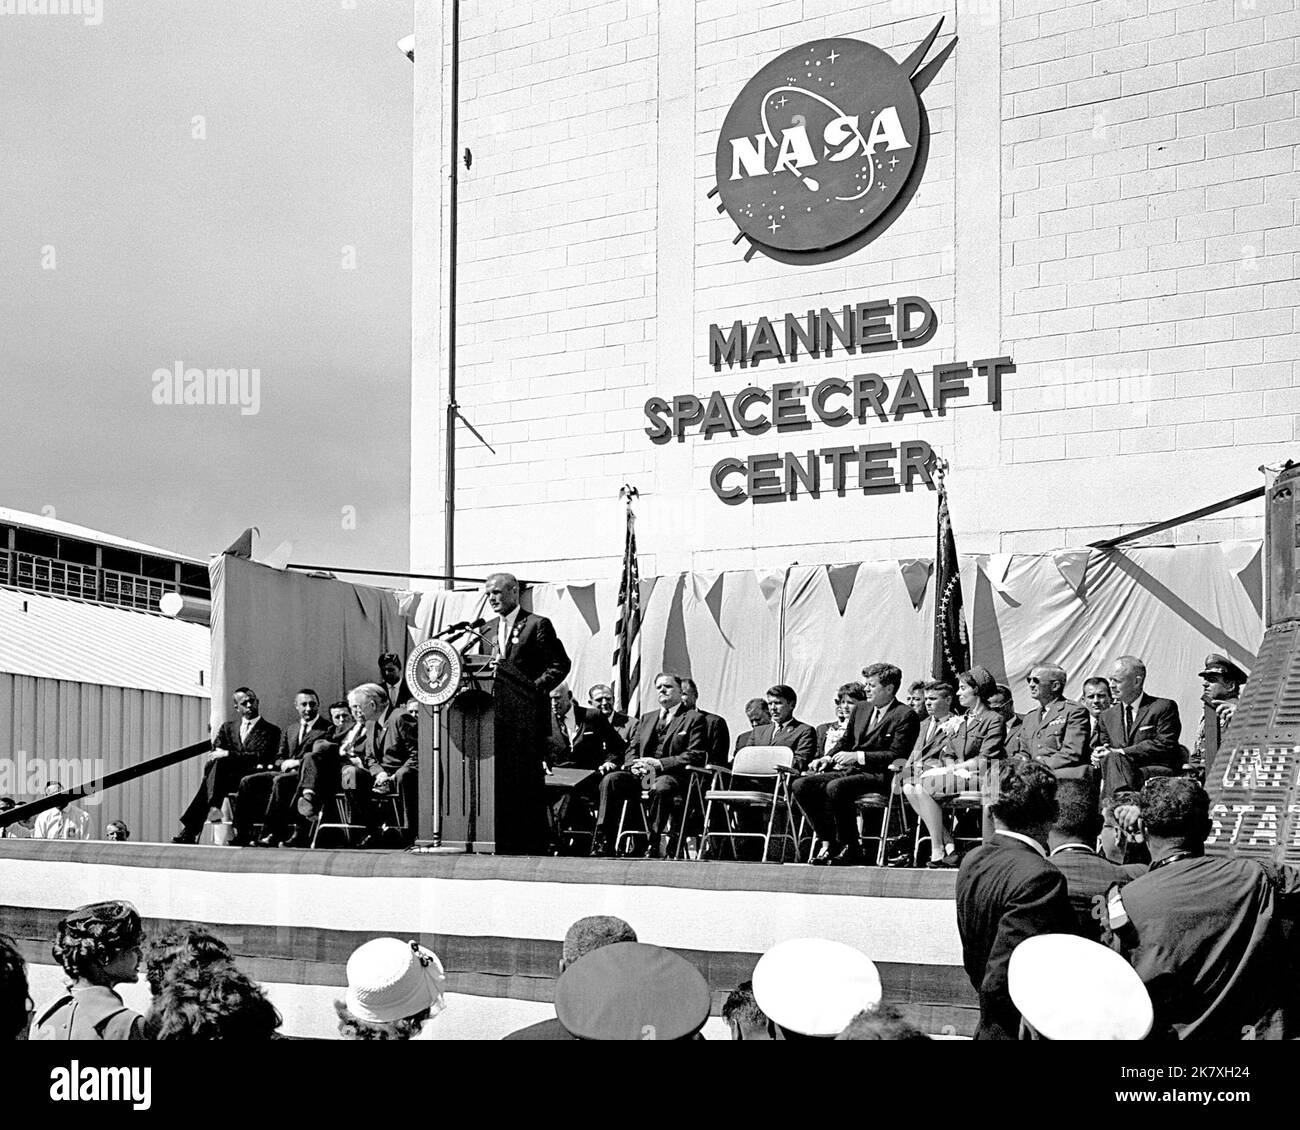 L'astronaute John Glenn Jr. Parle après avoir été honoré par le président John F. Kennedy à la suite du vol historique de Glenn sur trois orbites, Mercury-Atlas 6. La cérémonie a eu lieu devant Hangar S à la station de la Force aérienne de Cape Canaveral. Banque D'Images